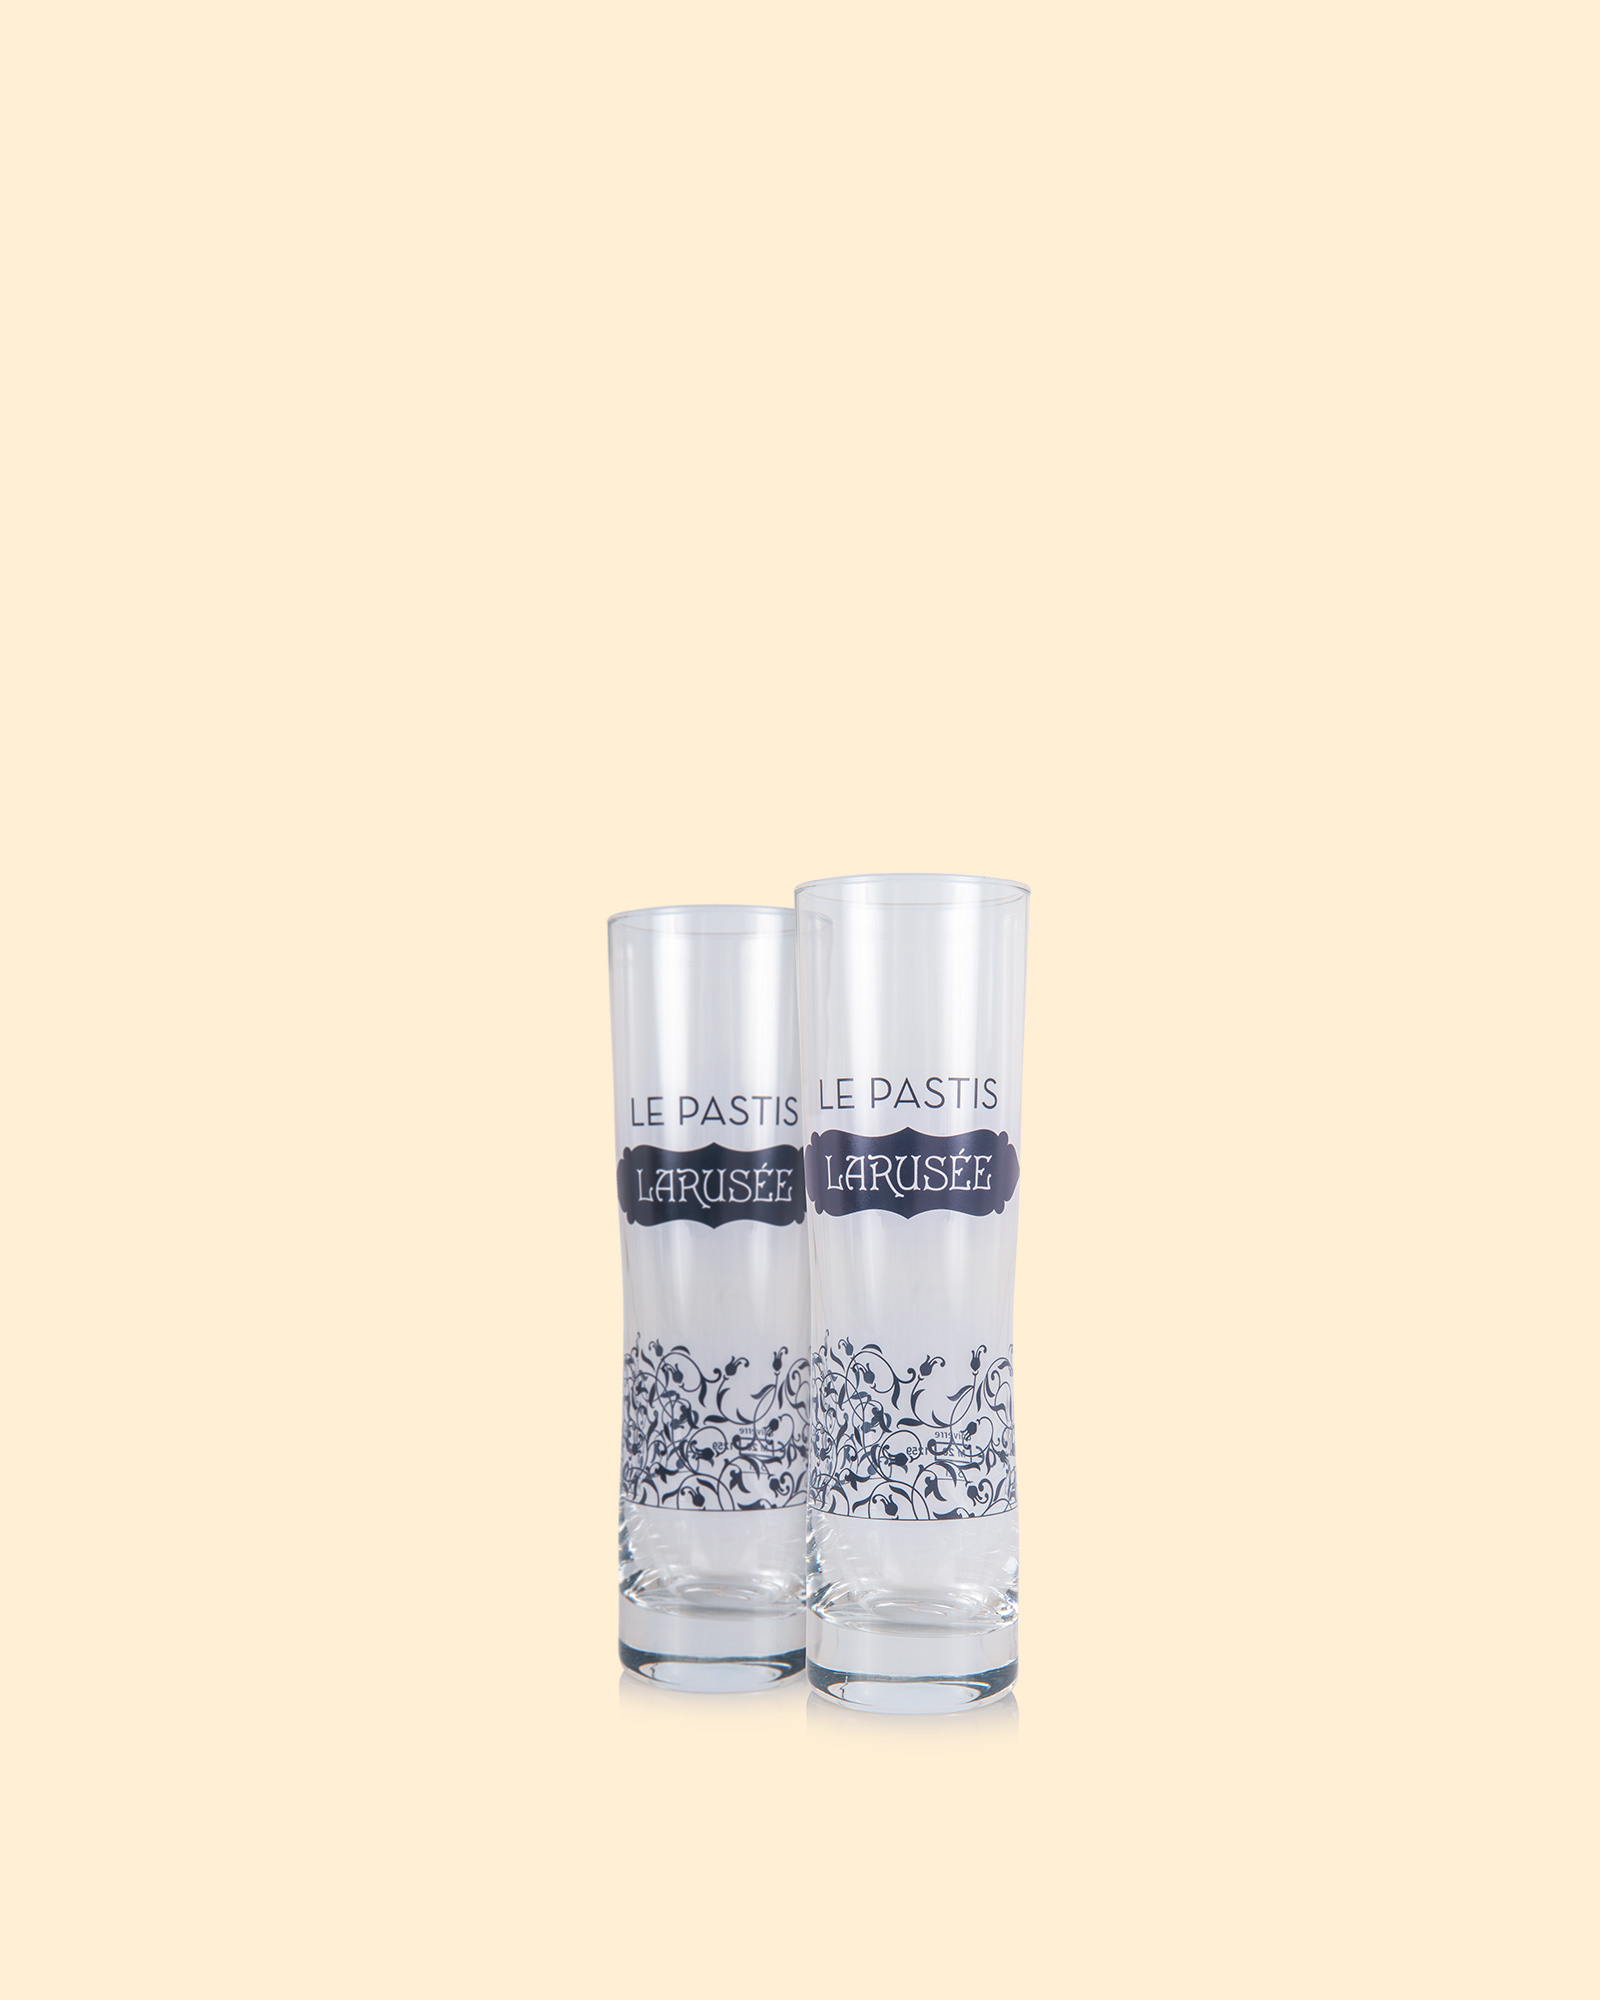 Duo de verres à Pastis – Larusée